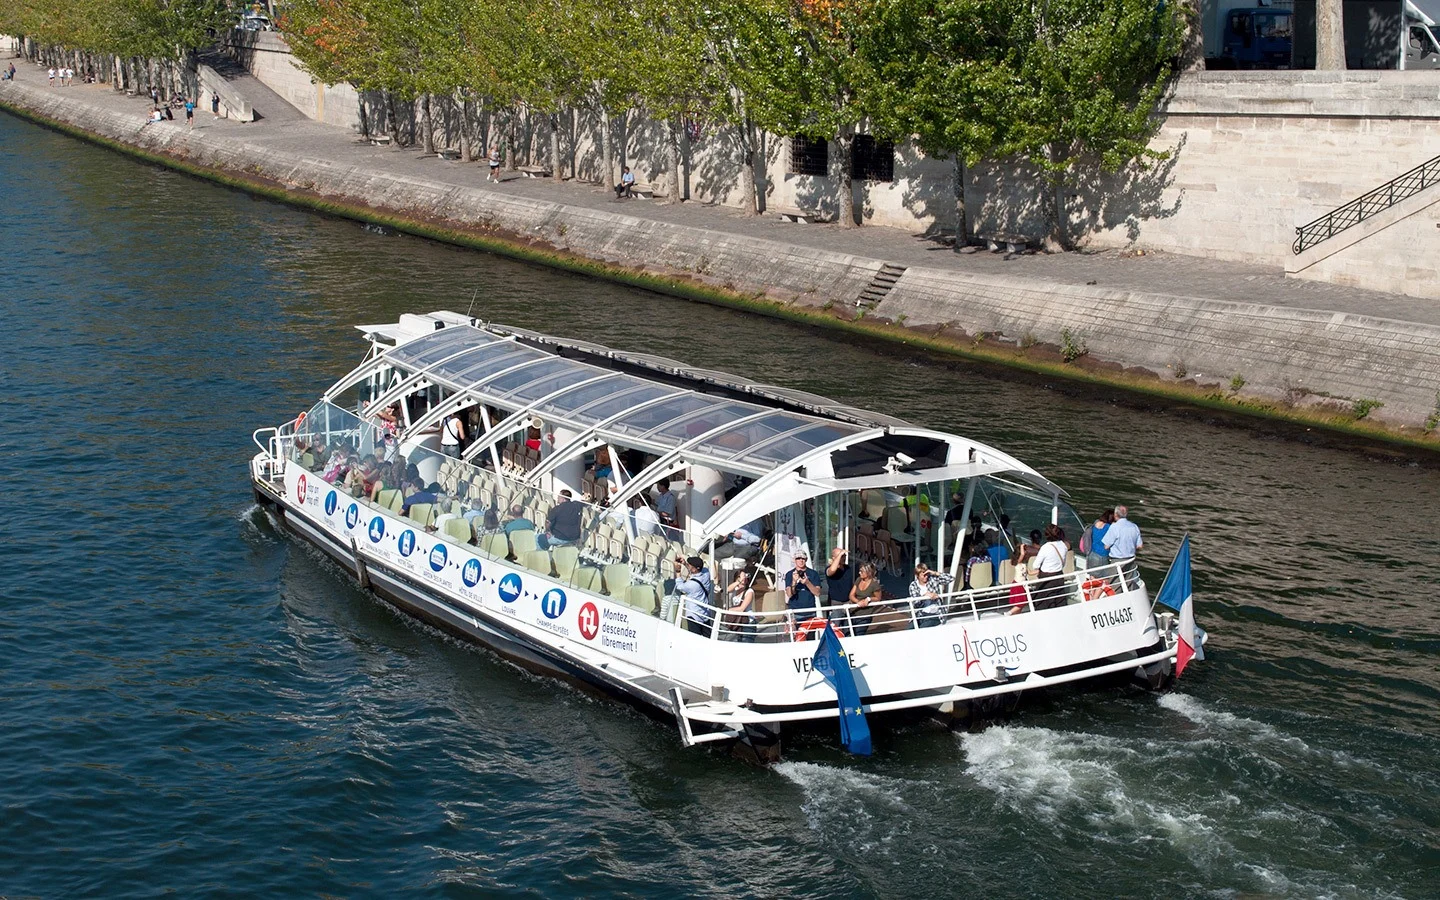 The Batobus boat trips along the Seine, Paris